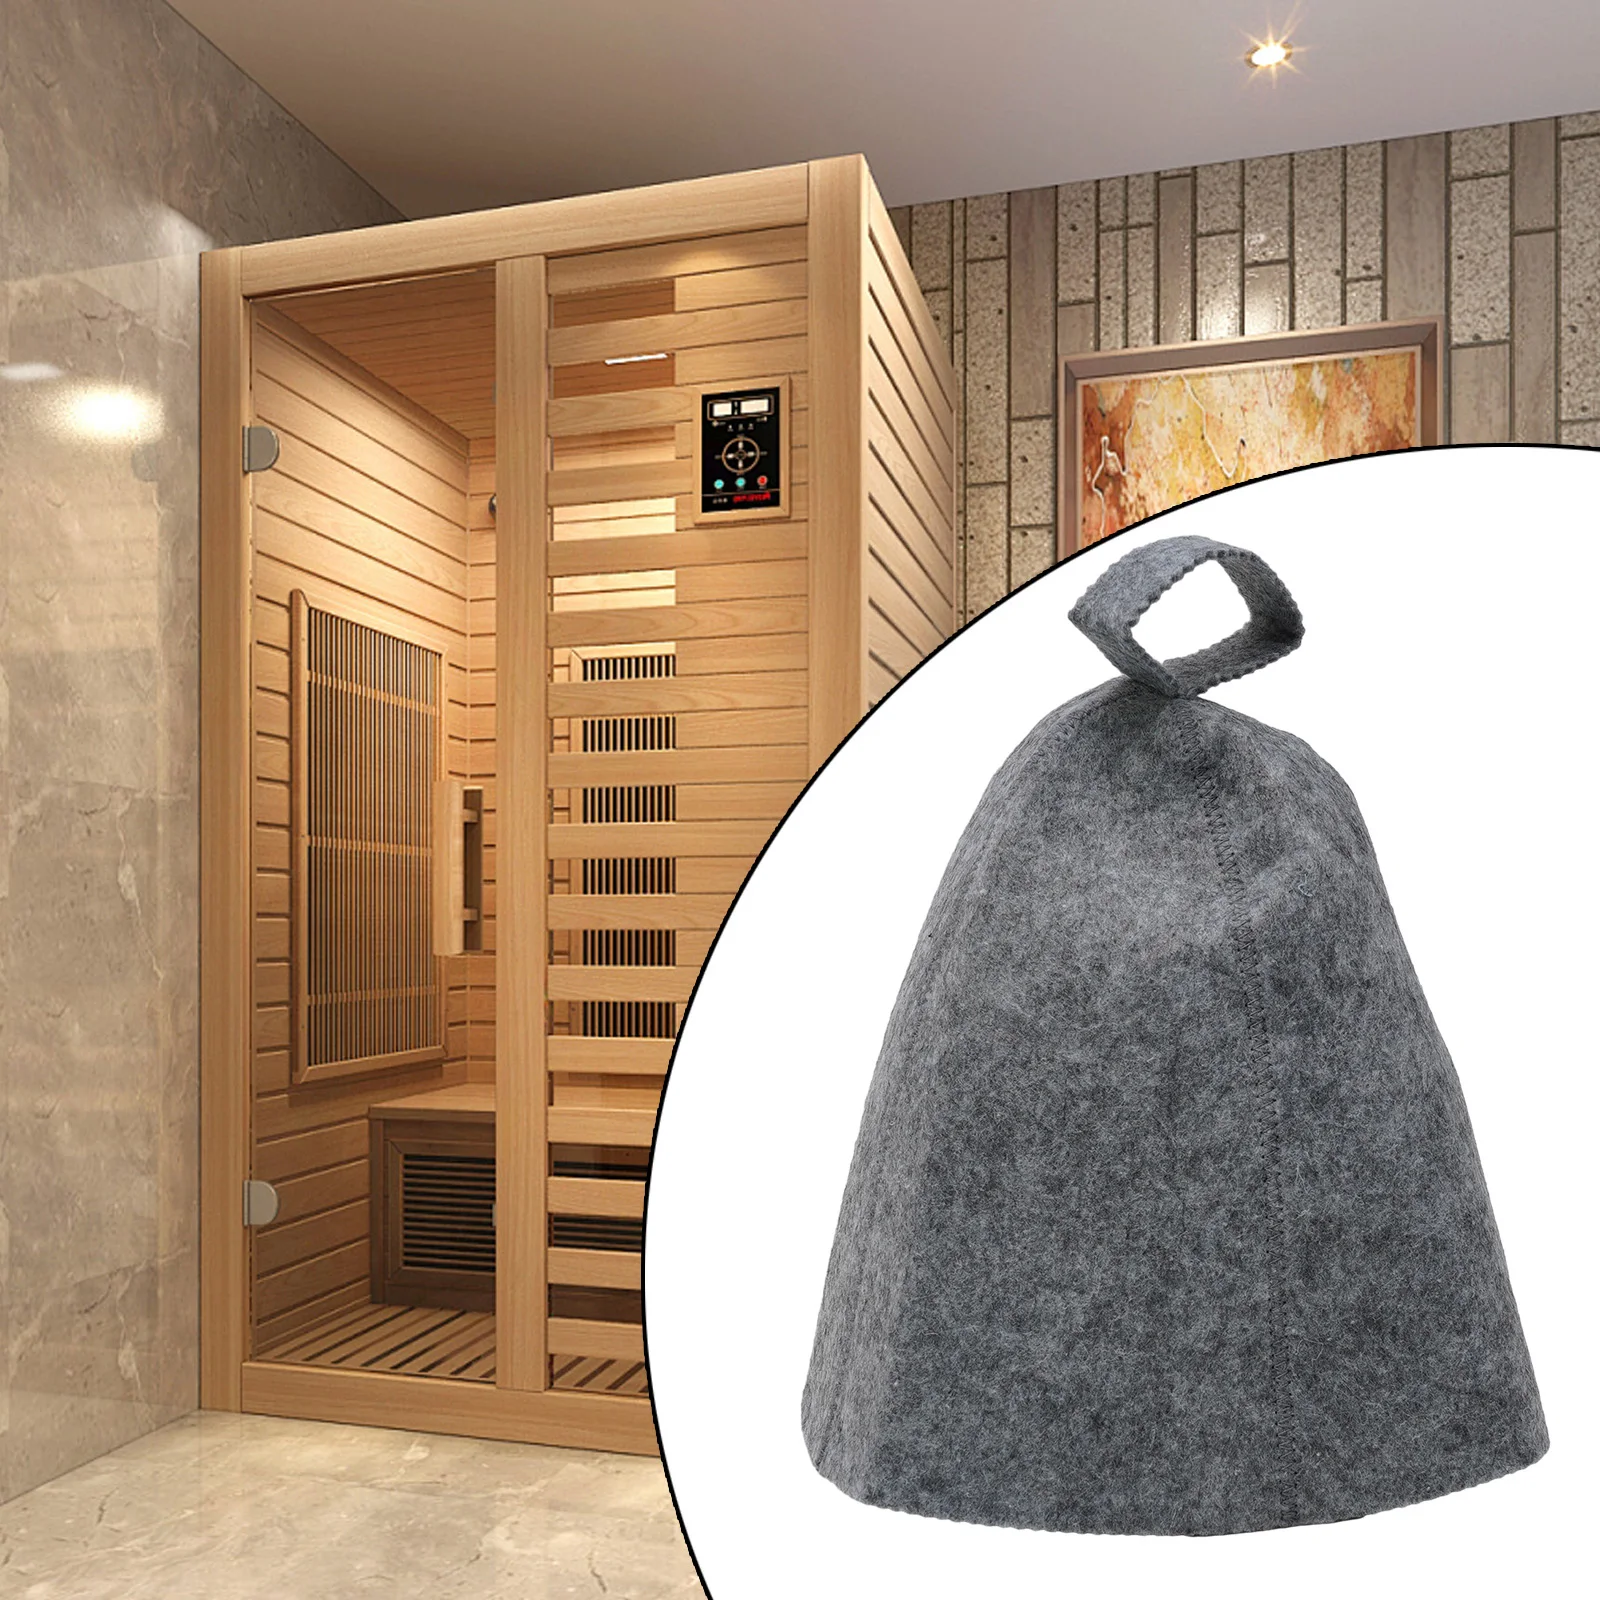 Cappello da Sauna nuovo di zecca pratico di alta qualità berretto di lana protezione Anti calore morbido bagno termale solido con anello appeso